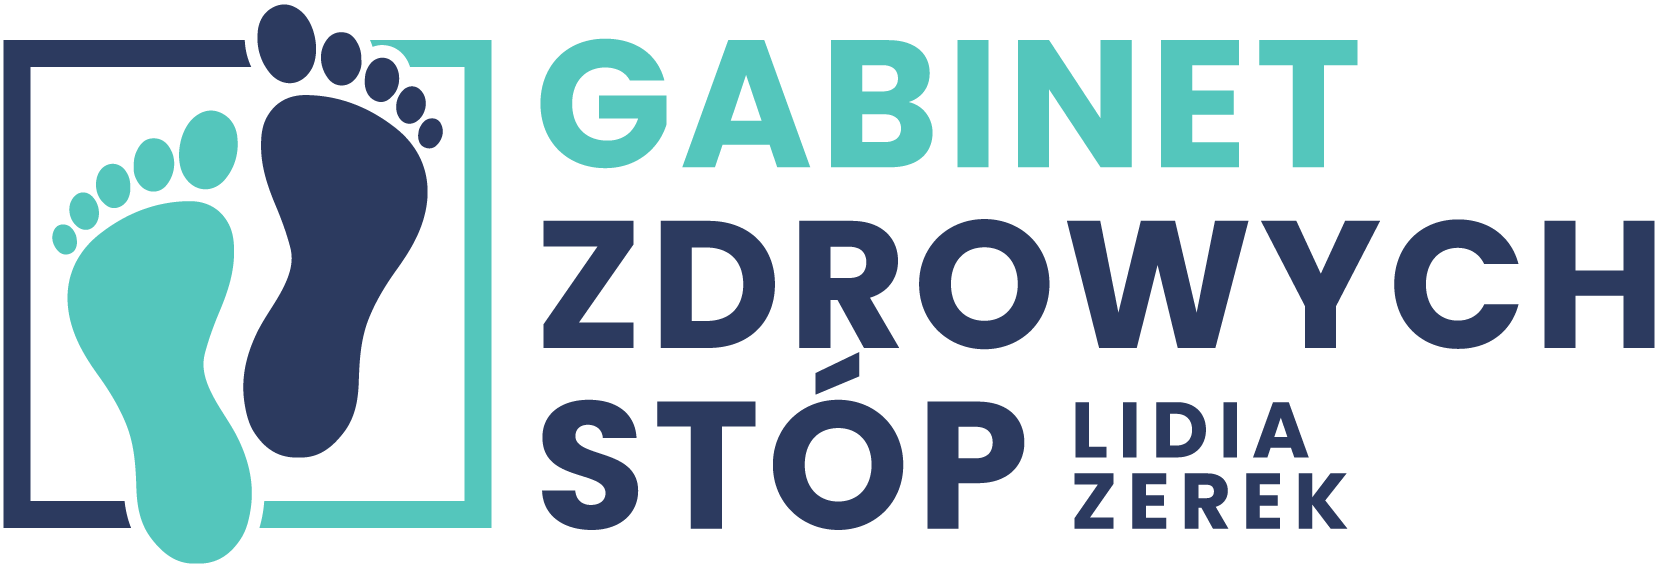 Gabinet Zdrowych Stóp - Podolog Lidia Zerek - Tomaszów Mazowiecki